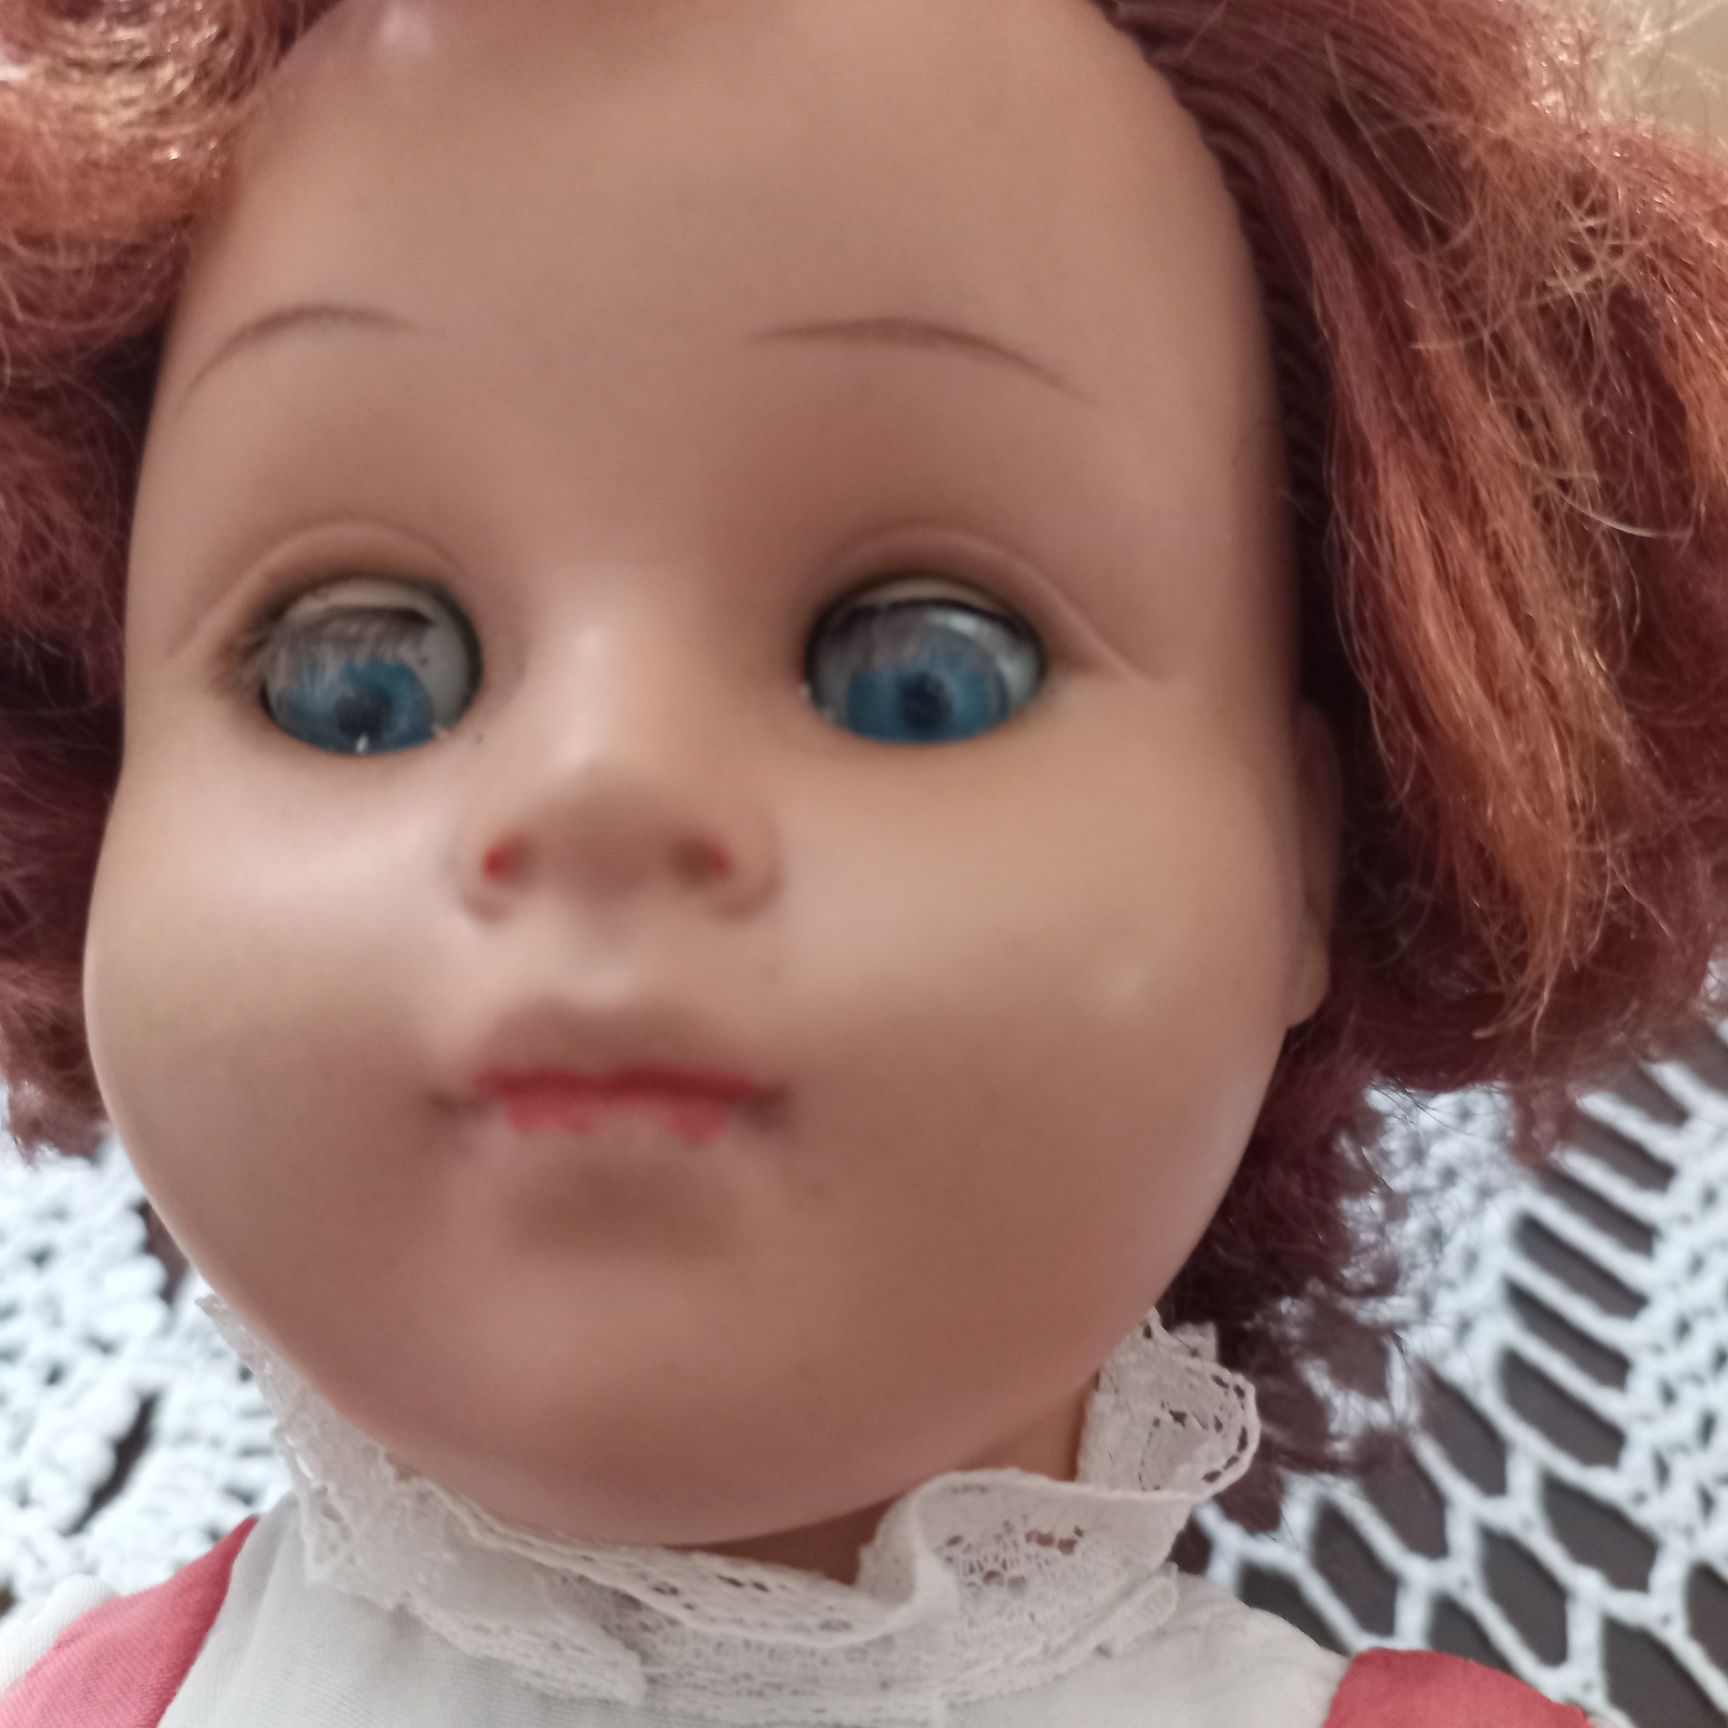 Кукла ГДР Sonni в  платье рост 40см